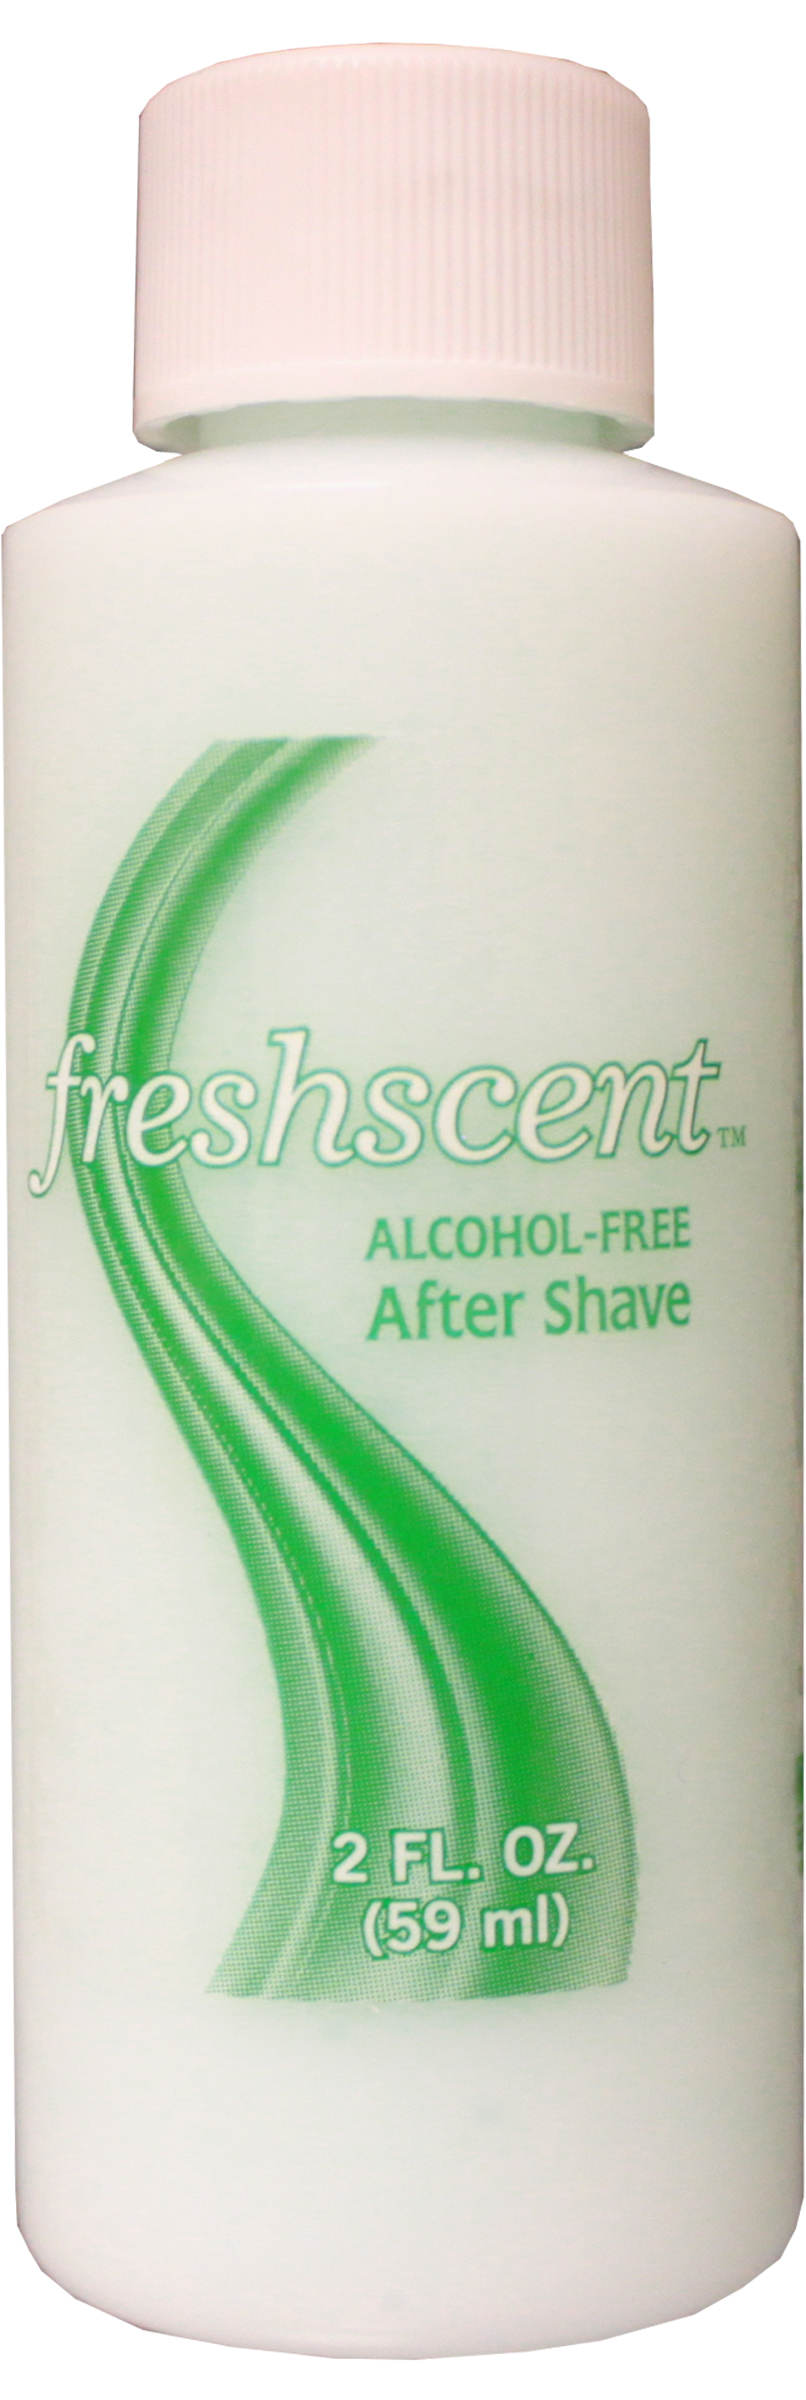 Freshscent 2 oz. After Shave